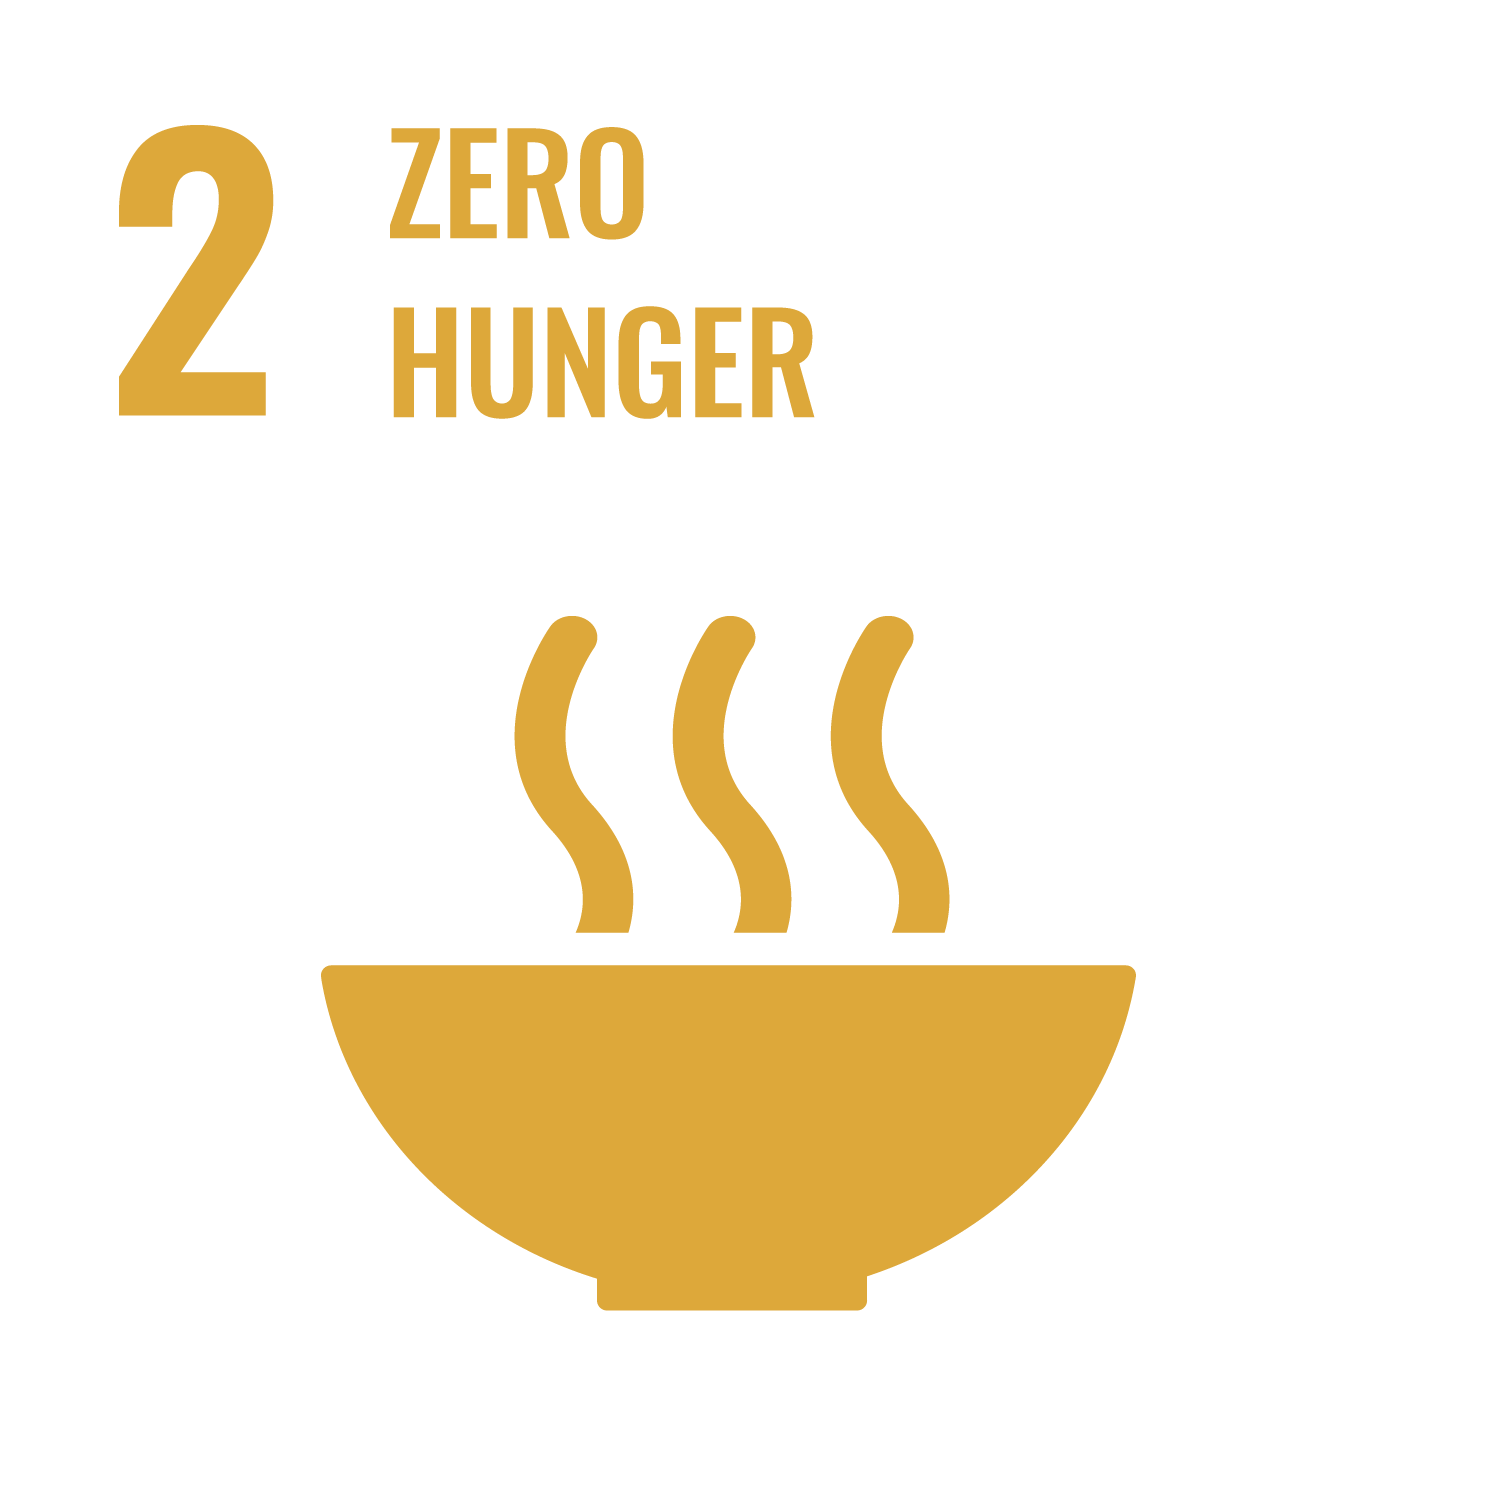 Goal 2 - Zero hunger